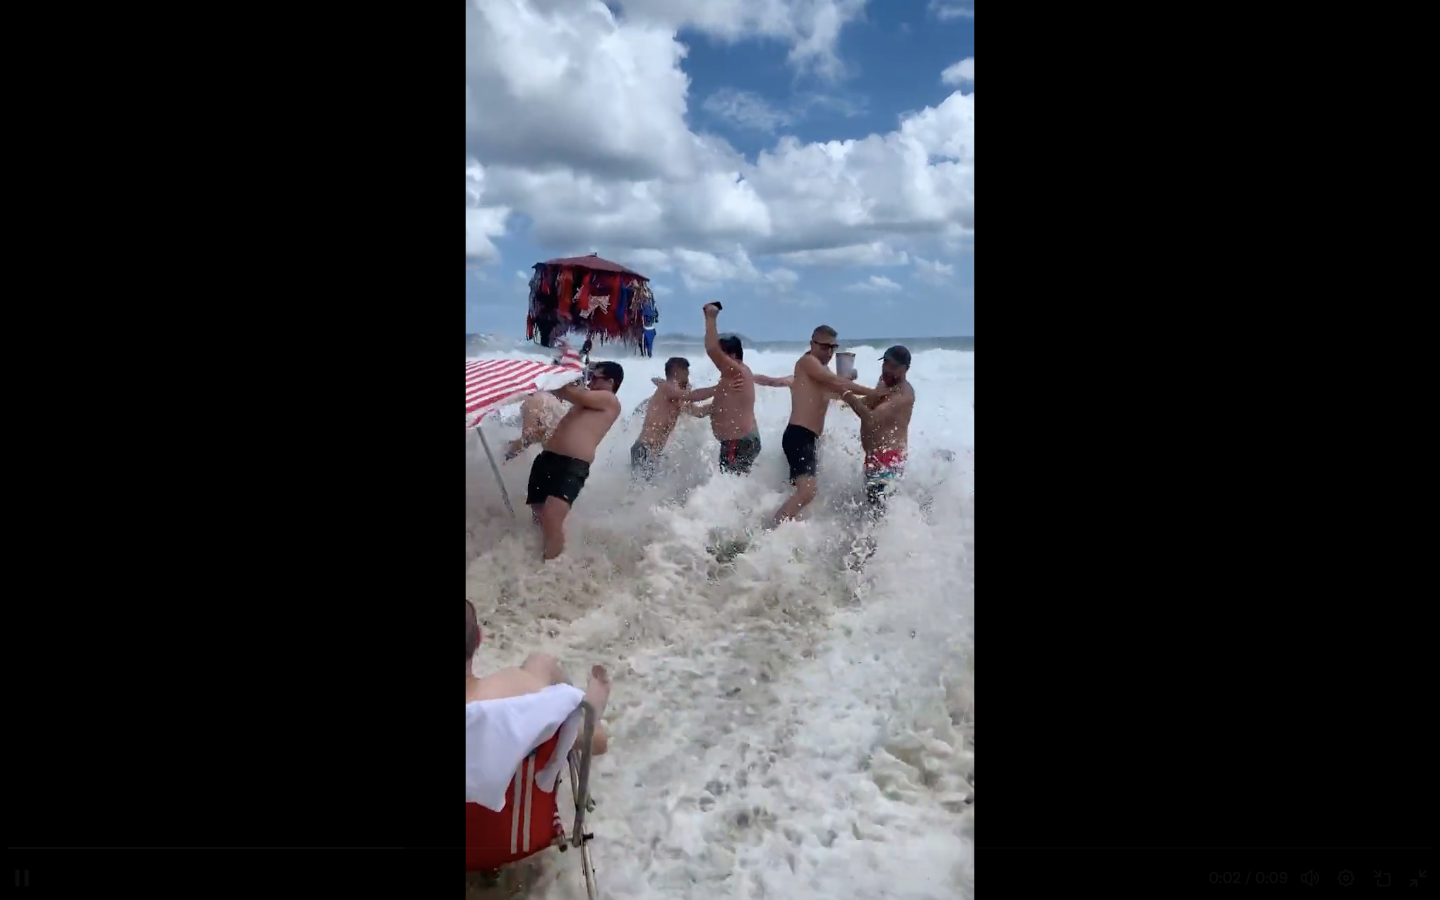 VÍDEO: Onda gigante invade praia do Leblon e arrasta banhistas; jovem some no mar em Ipanema